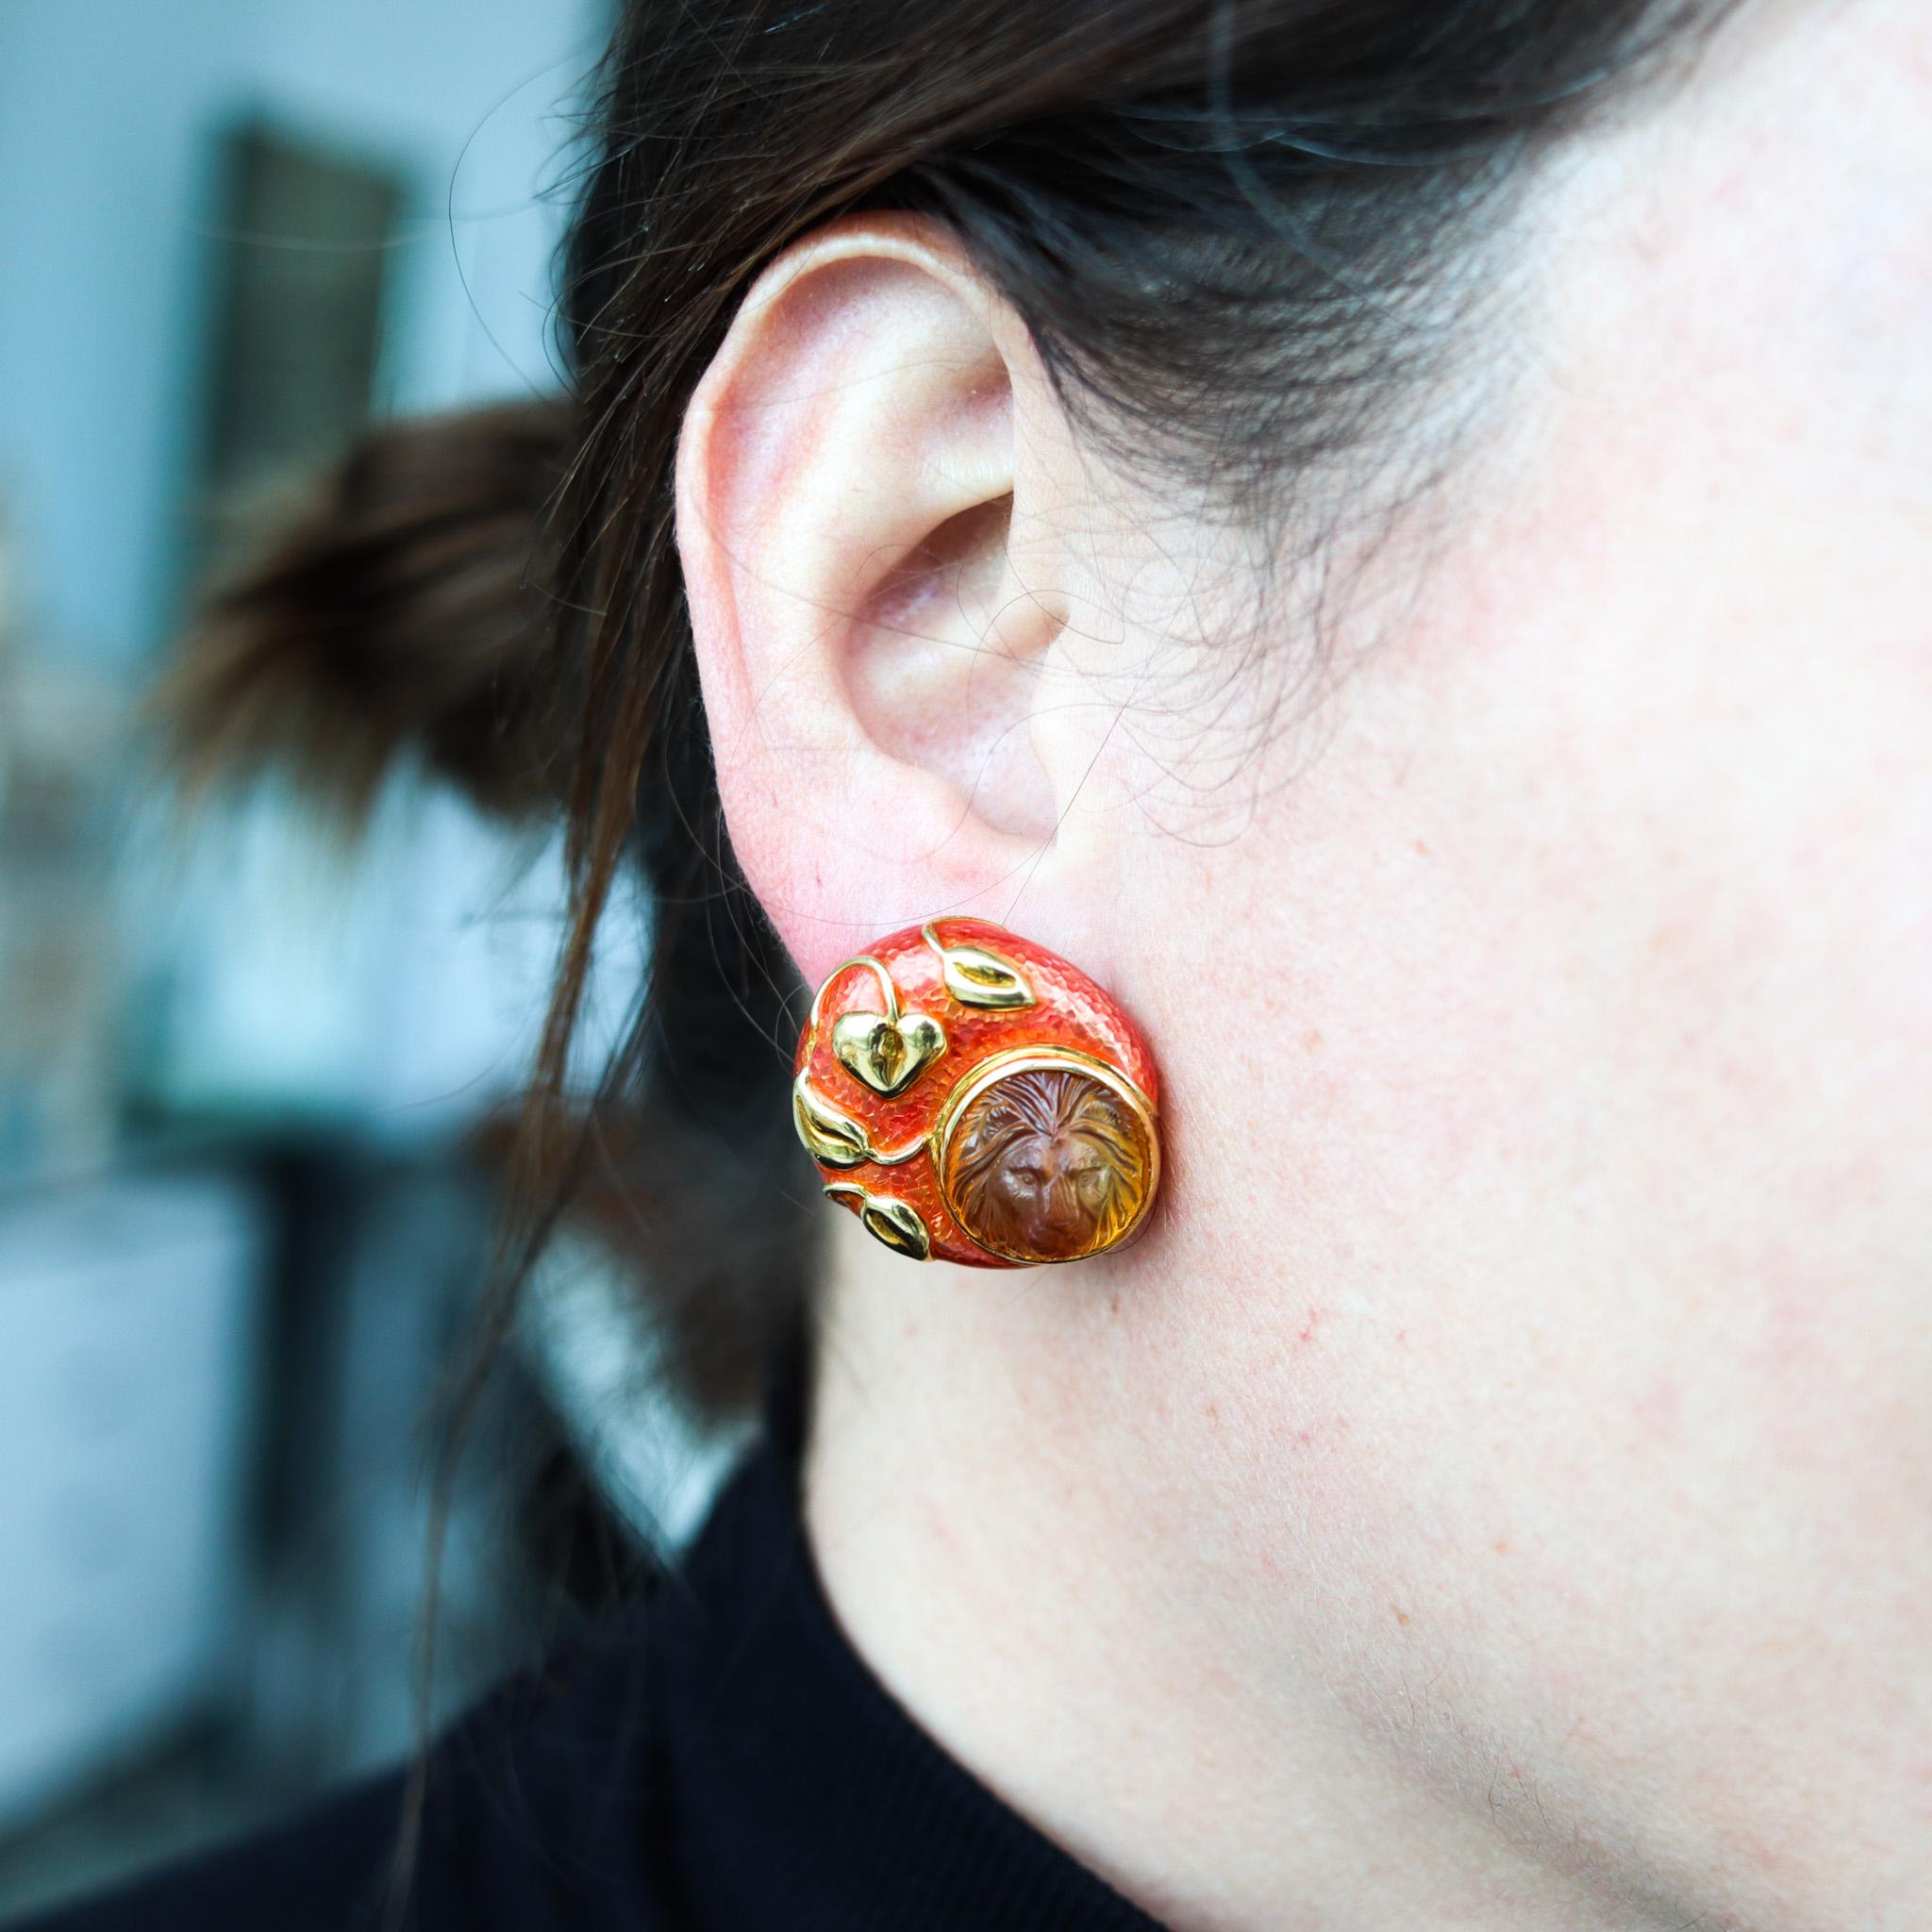 Ein Paar Clip-Ohrringe, entworfen von Elizabeth Gage.

Wunderschönes Paar Vintage-Ohrringe, das 1993 von der britischen Schmuckdesignerin Elizabeth Gage in London entworfen wurde. Diese seltenen Ohrclips wurden sorgfältig als linkes und rechtes Paar